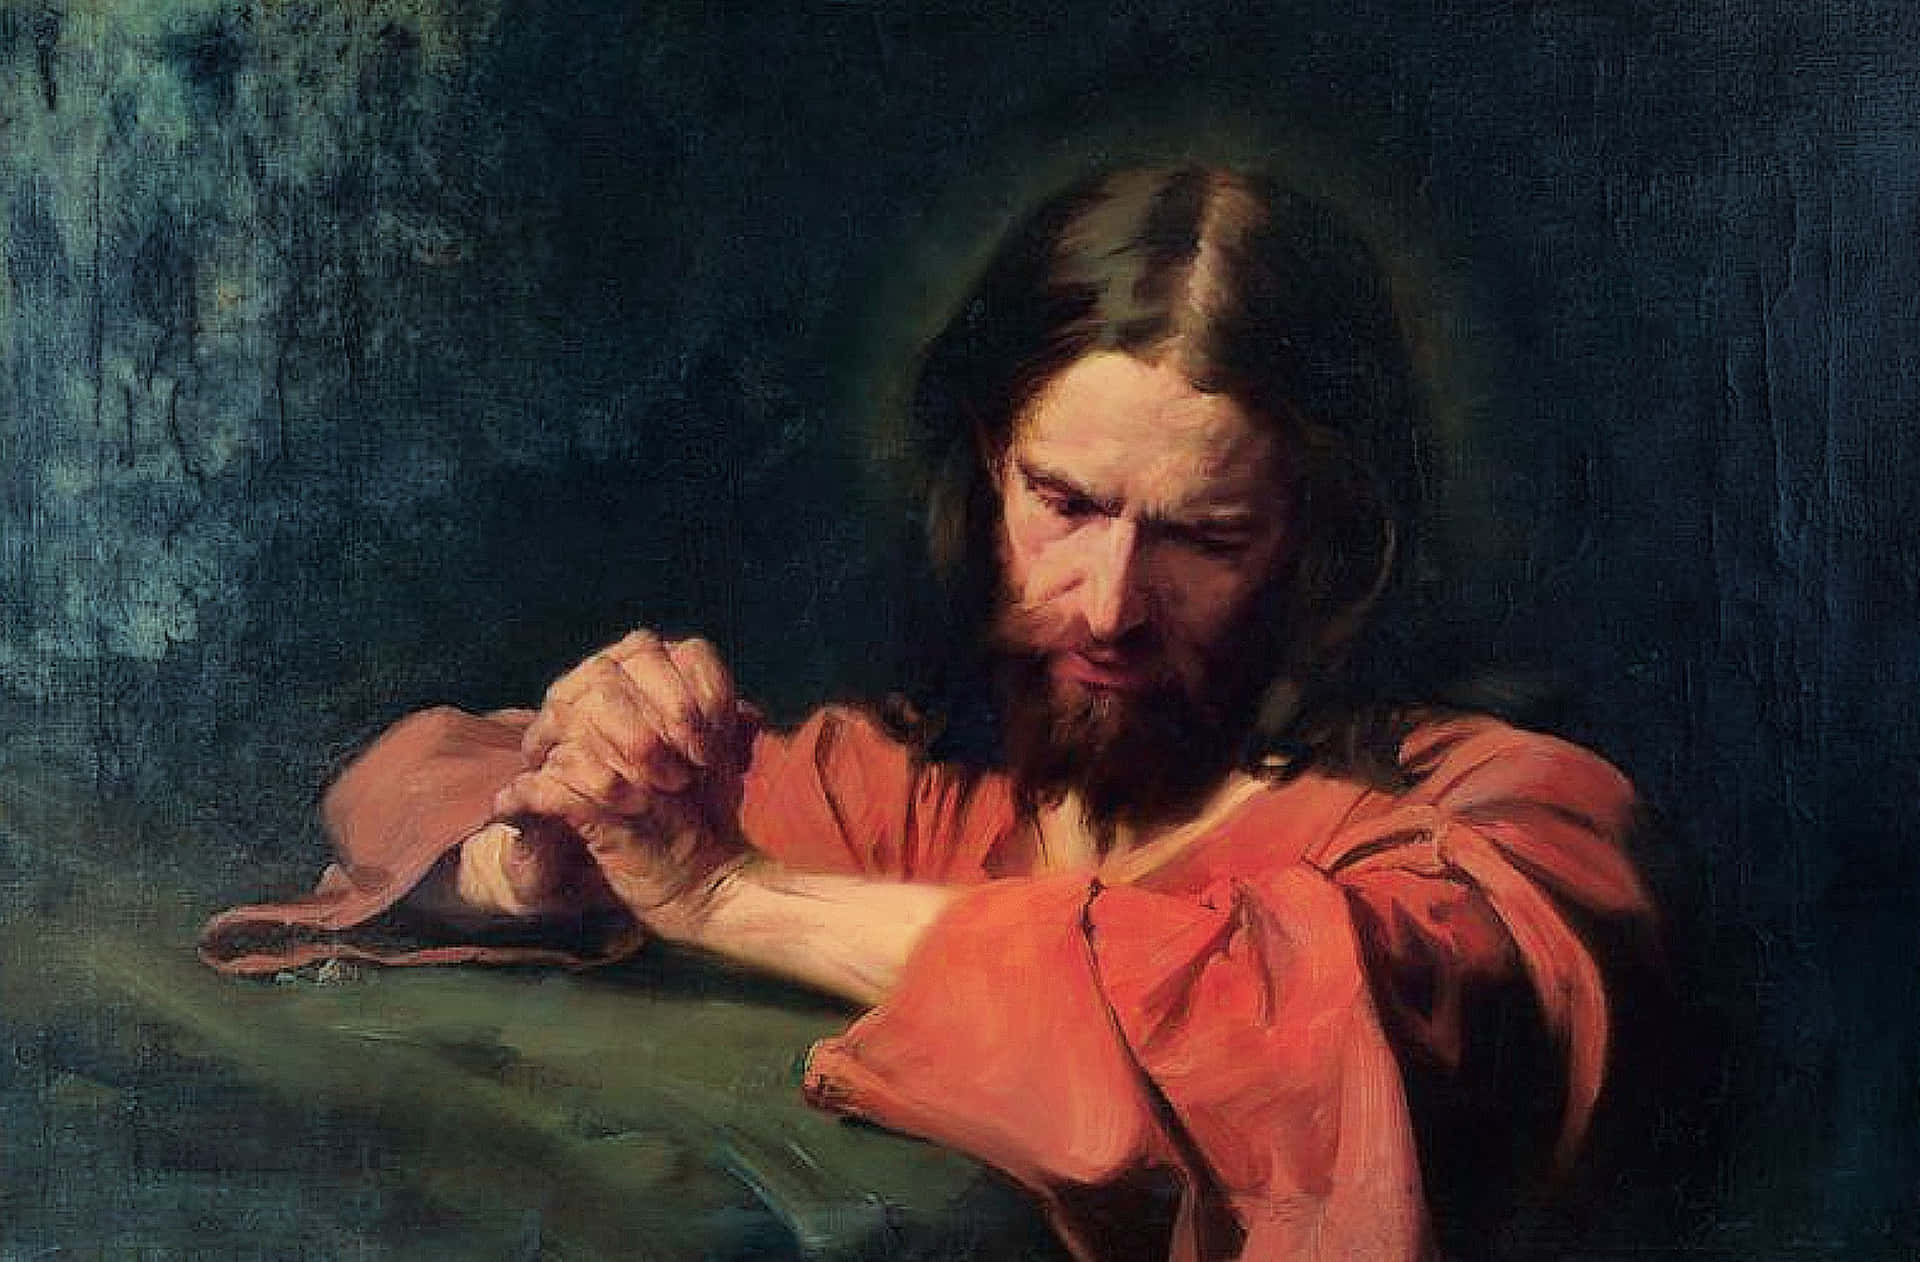 Jesus kneeling in prayerful devotion. Wallpaper